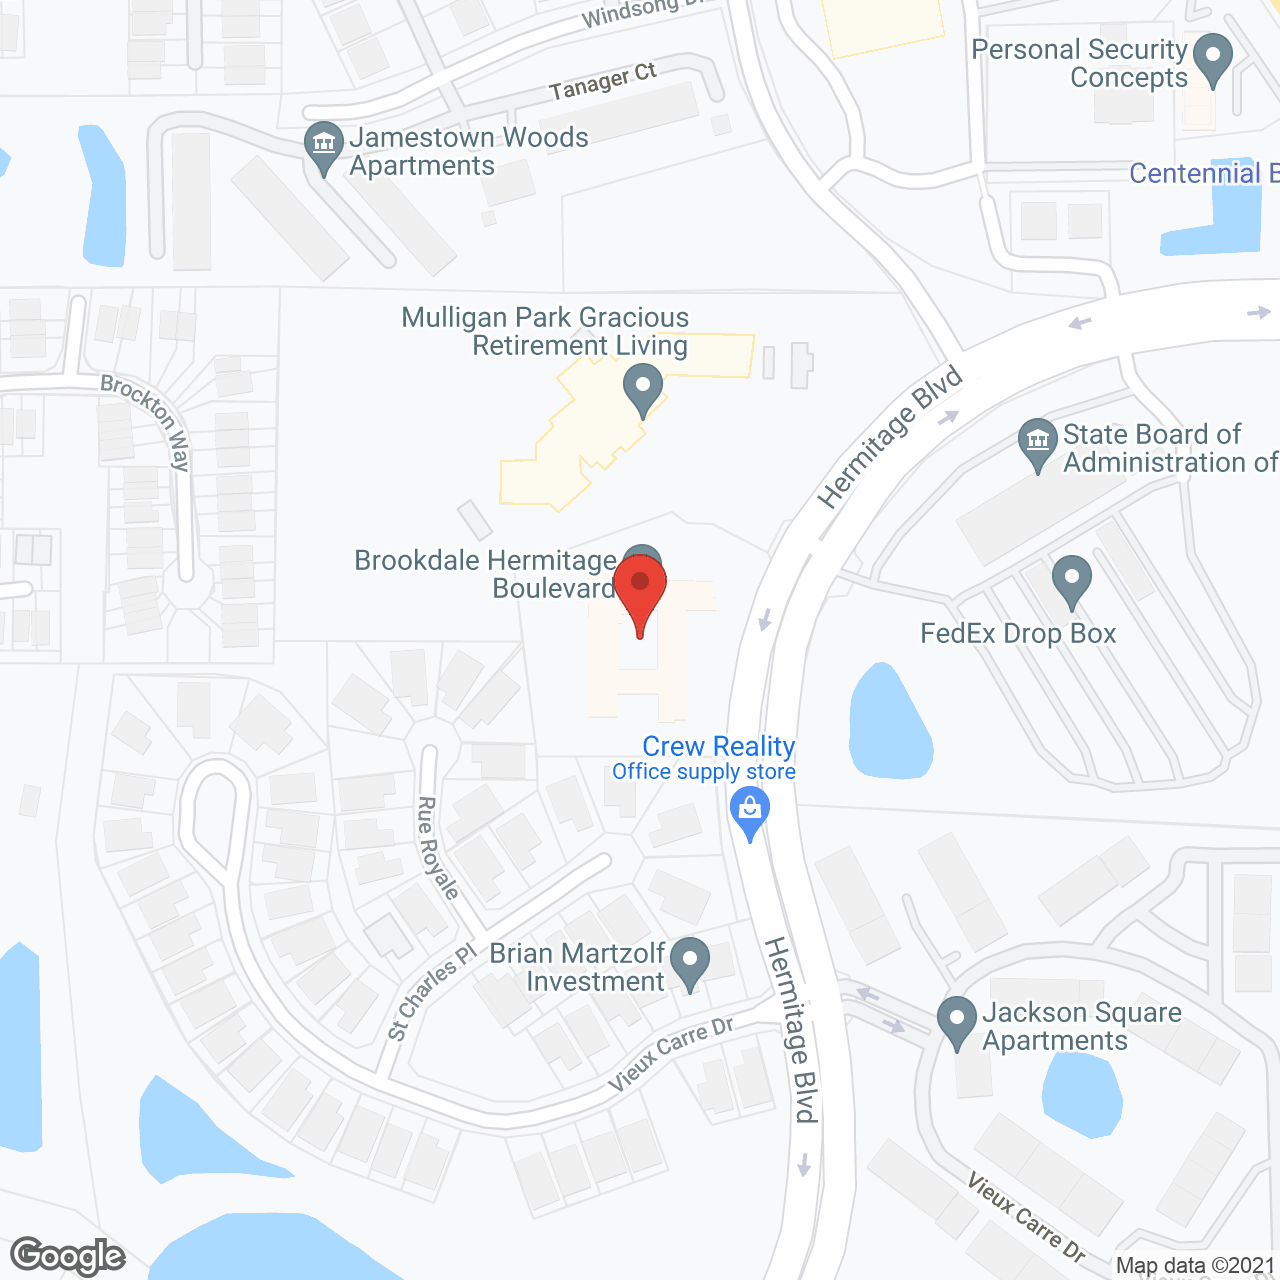 Brookdale Hermitage Boulevard in google map